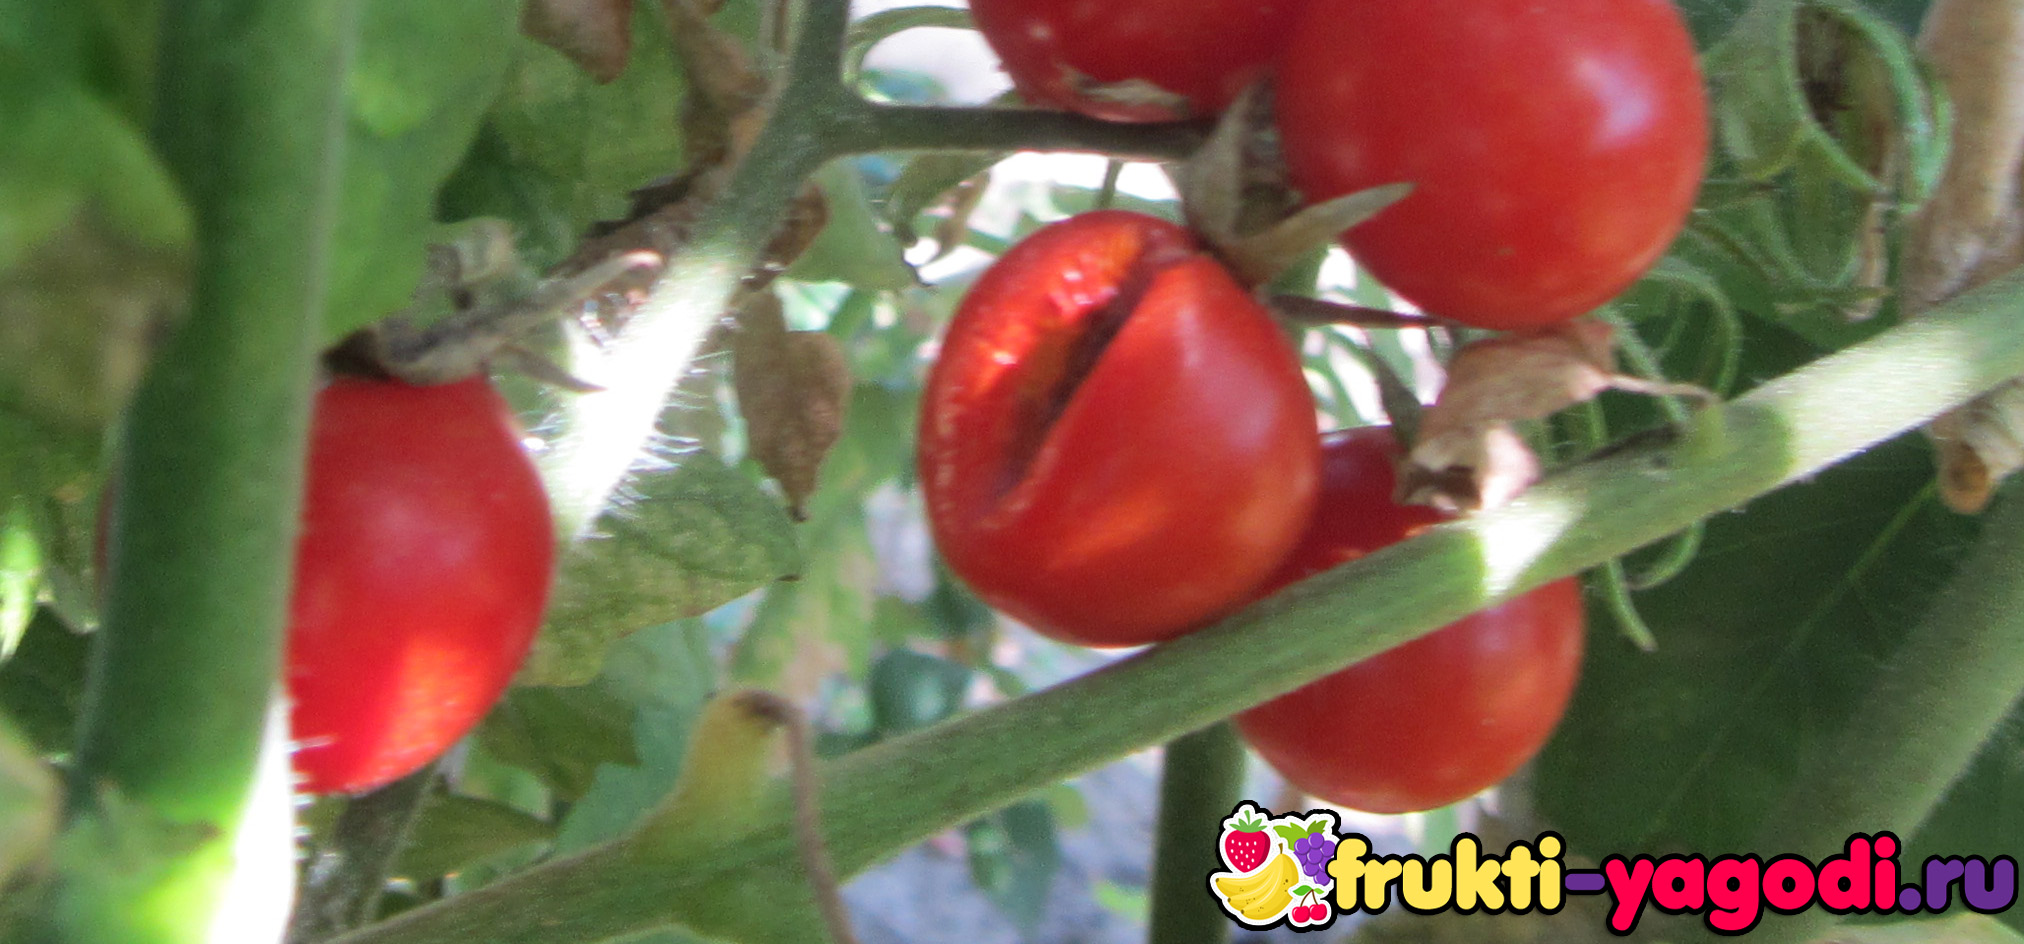 Что делать если начинают трескаться помидоры на кустах при созревании